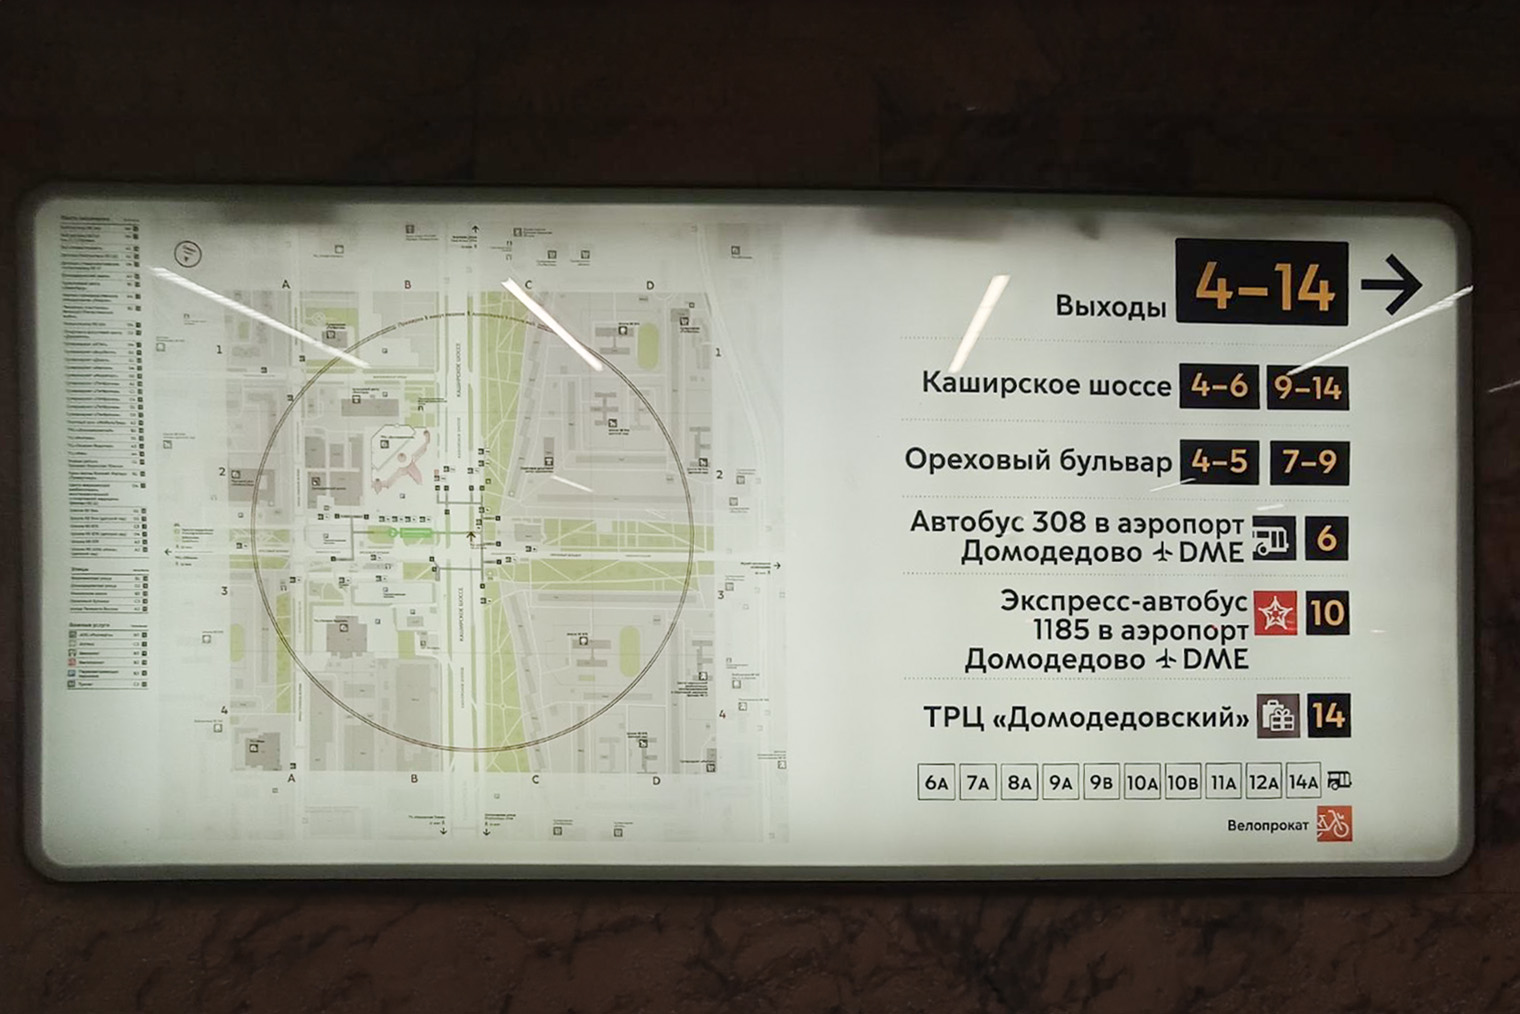 В метро обращайте внимание на указатели, чтобы найти нужный выход к экспресс-автобусам